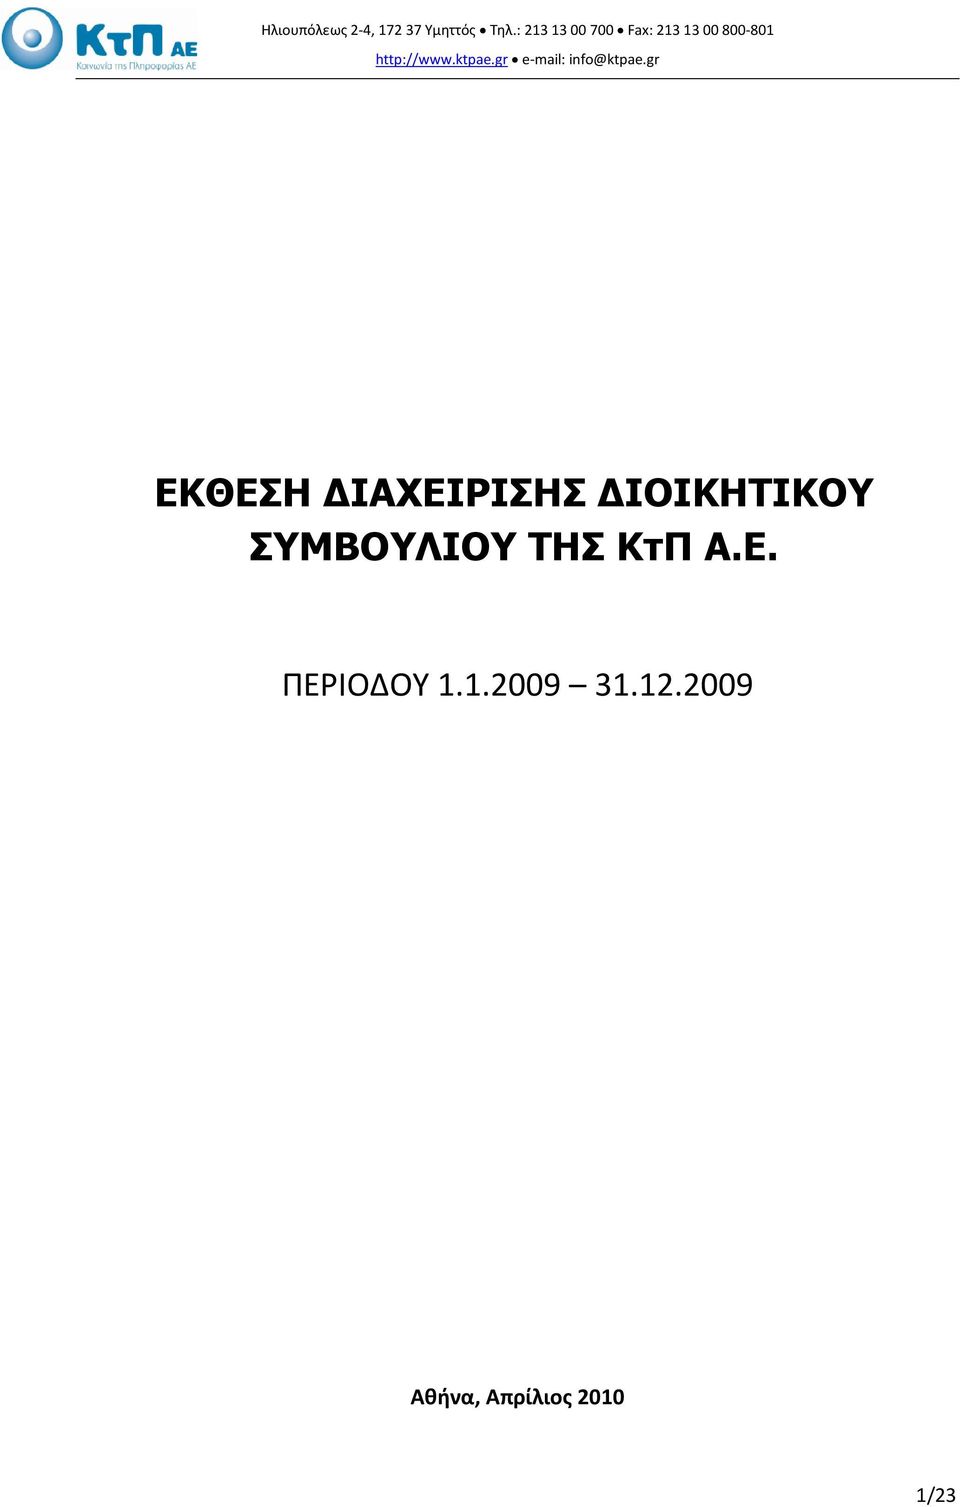 ktpae.gr e-mail: info@ktpae.